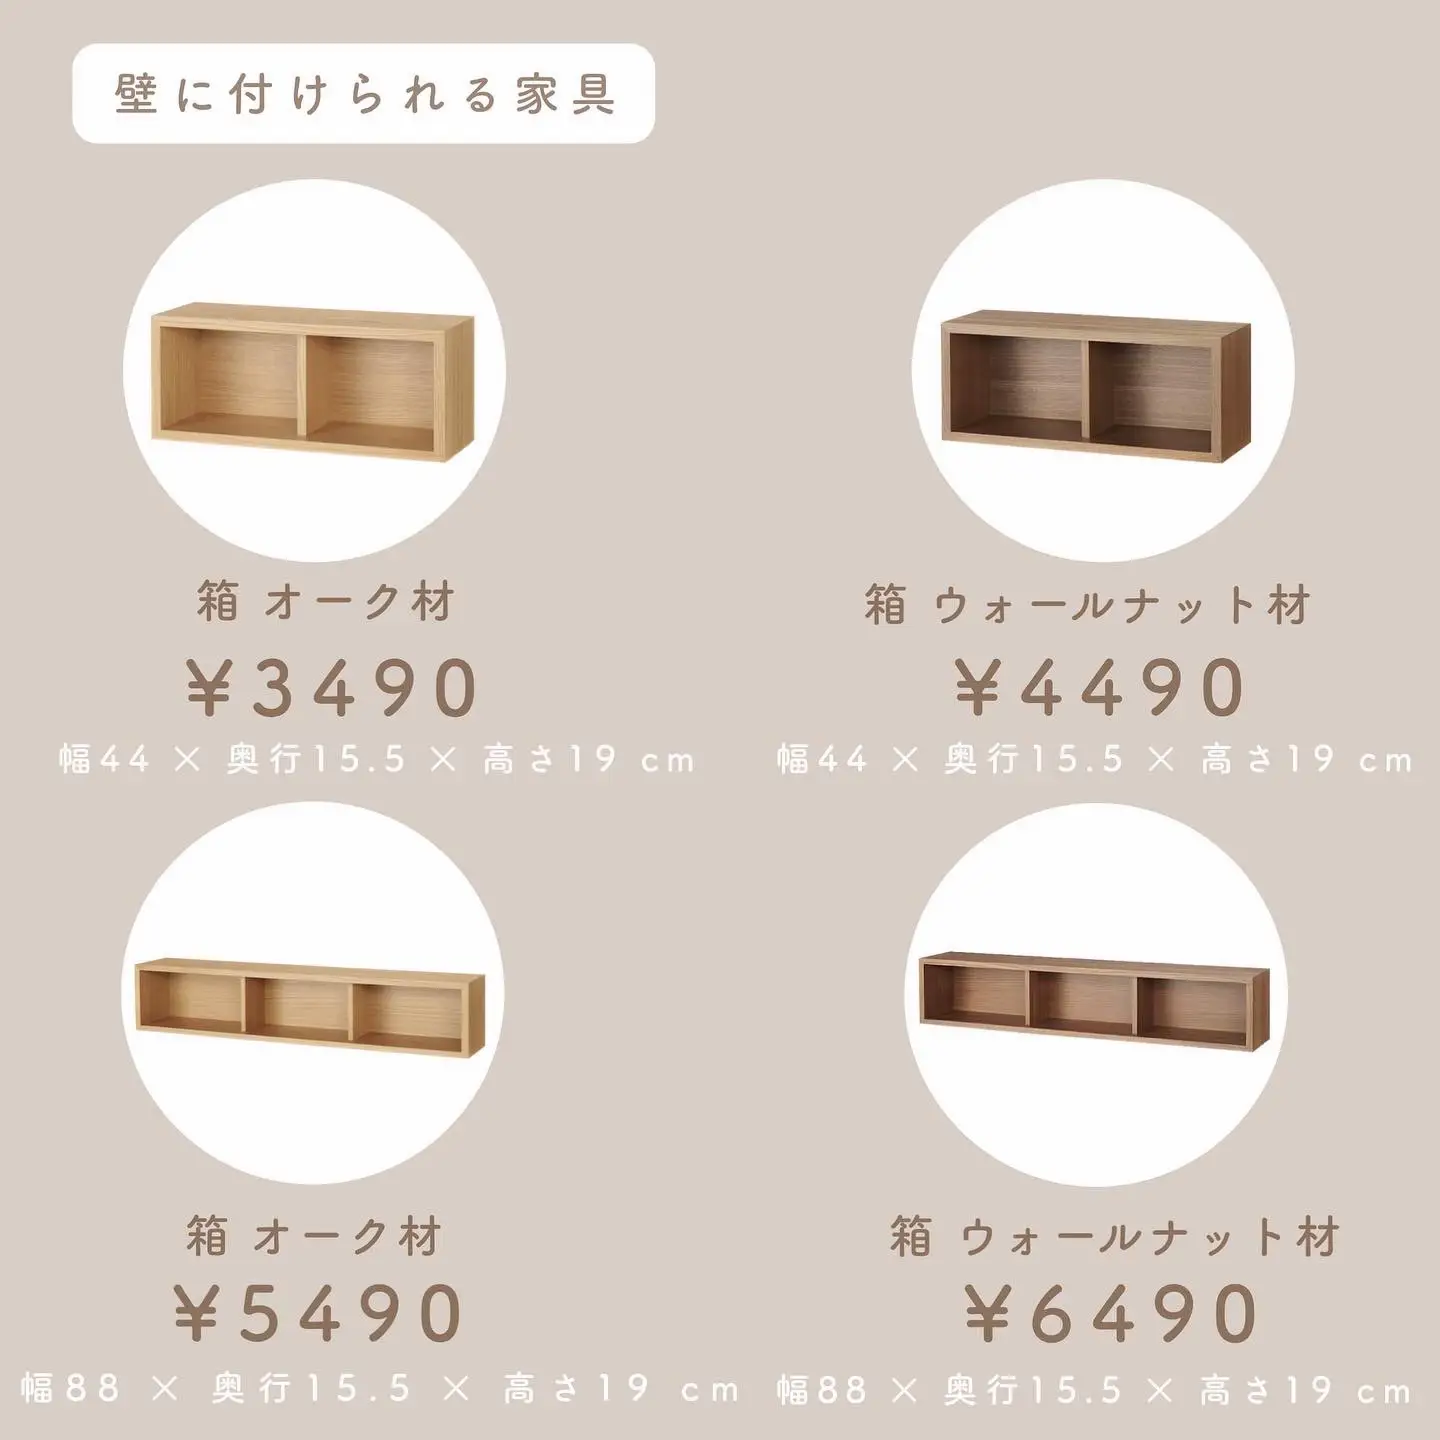 無印良品 木製家具 | yu.i_homeが投稿したフォトブック | Lemon8